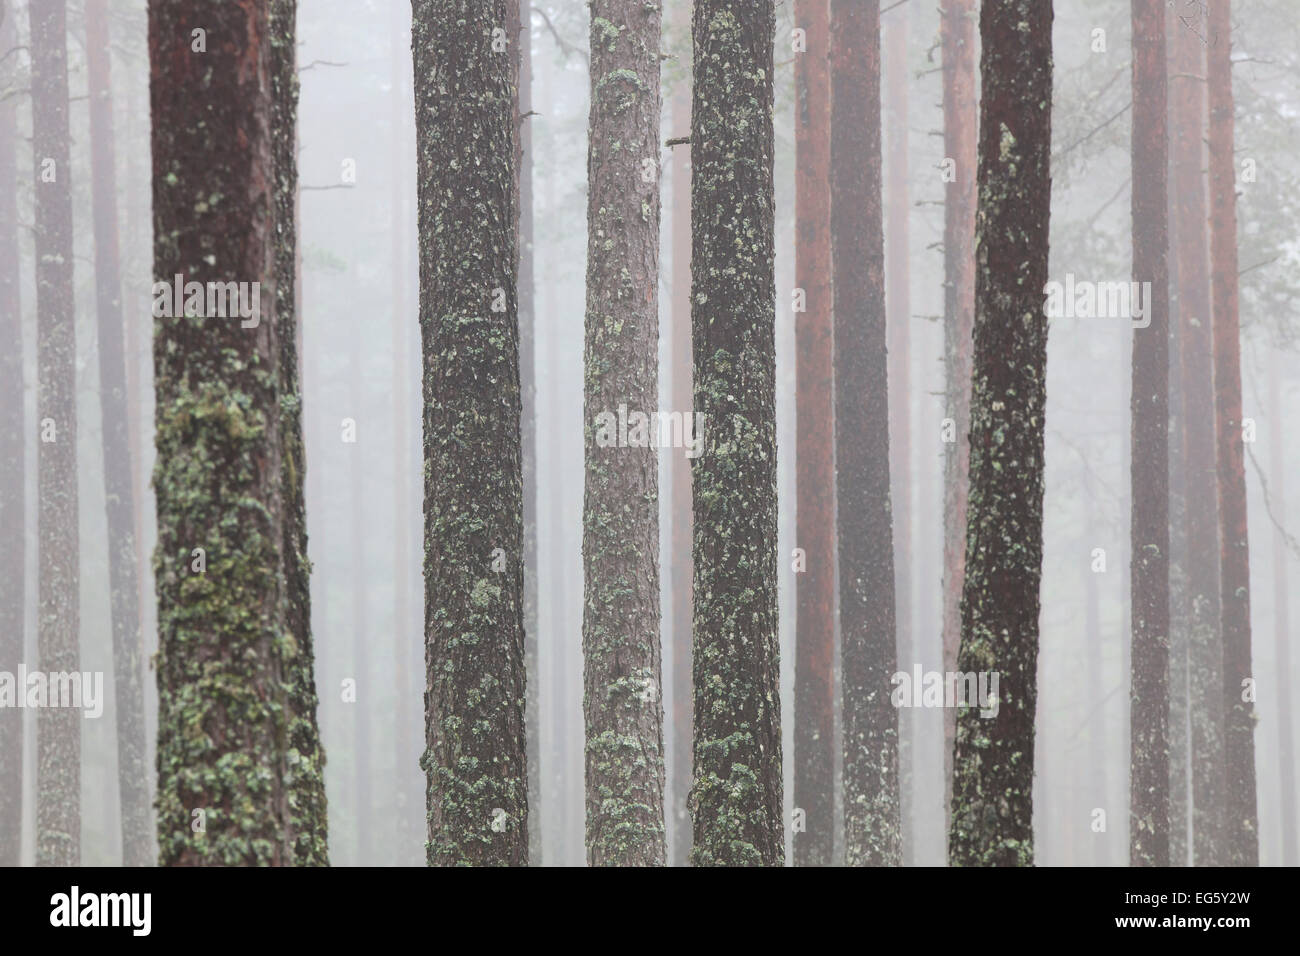 Di Pino silvestre (Pinus sylvestris), tronchi di alberi coperti nel tubo lichen (Hypogymnia physodes / Clairmont physodes) nella foresta nebuloso Foto Stock